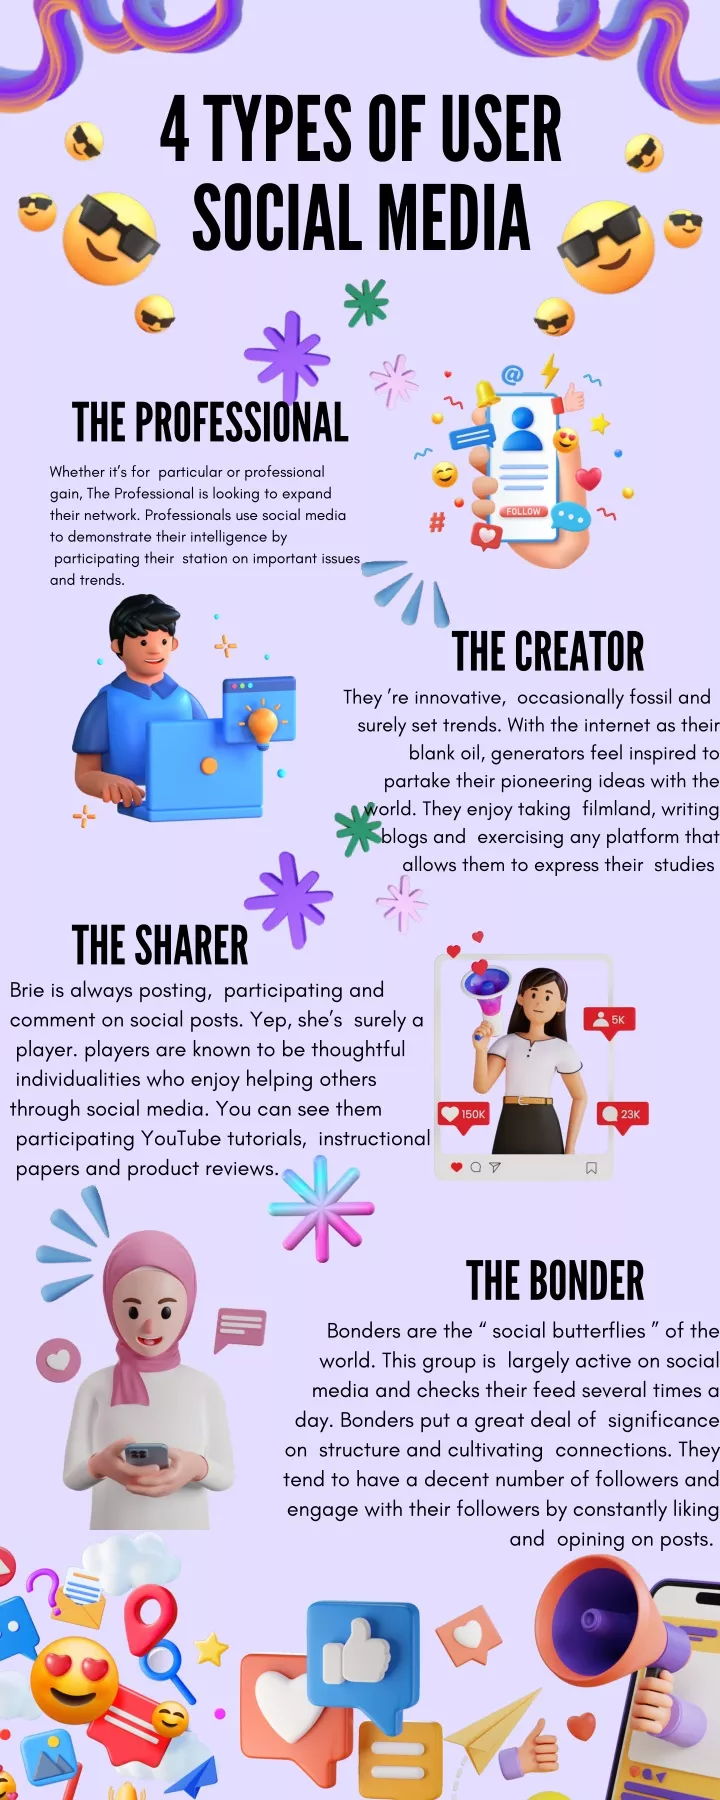 4 types of user social media